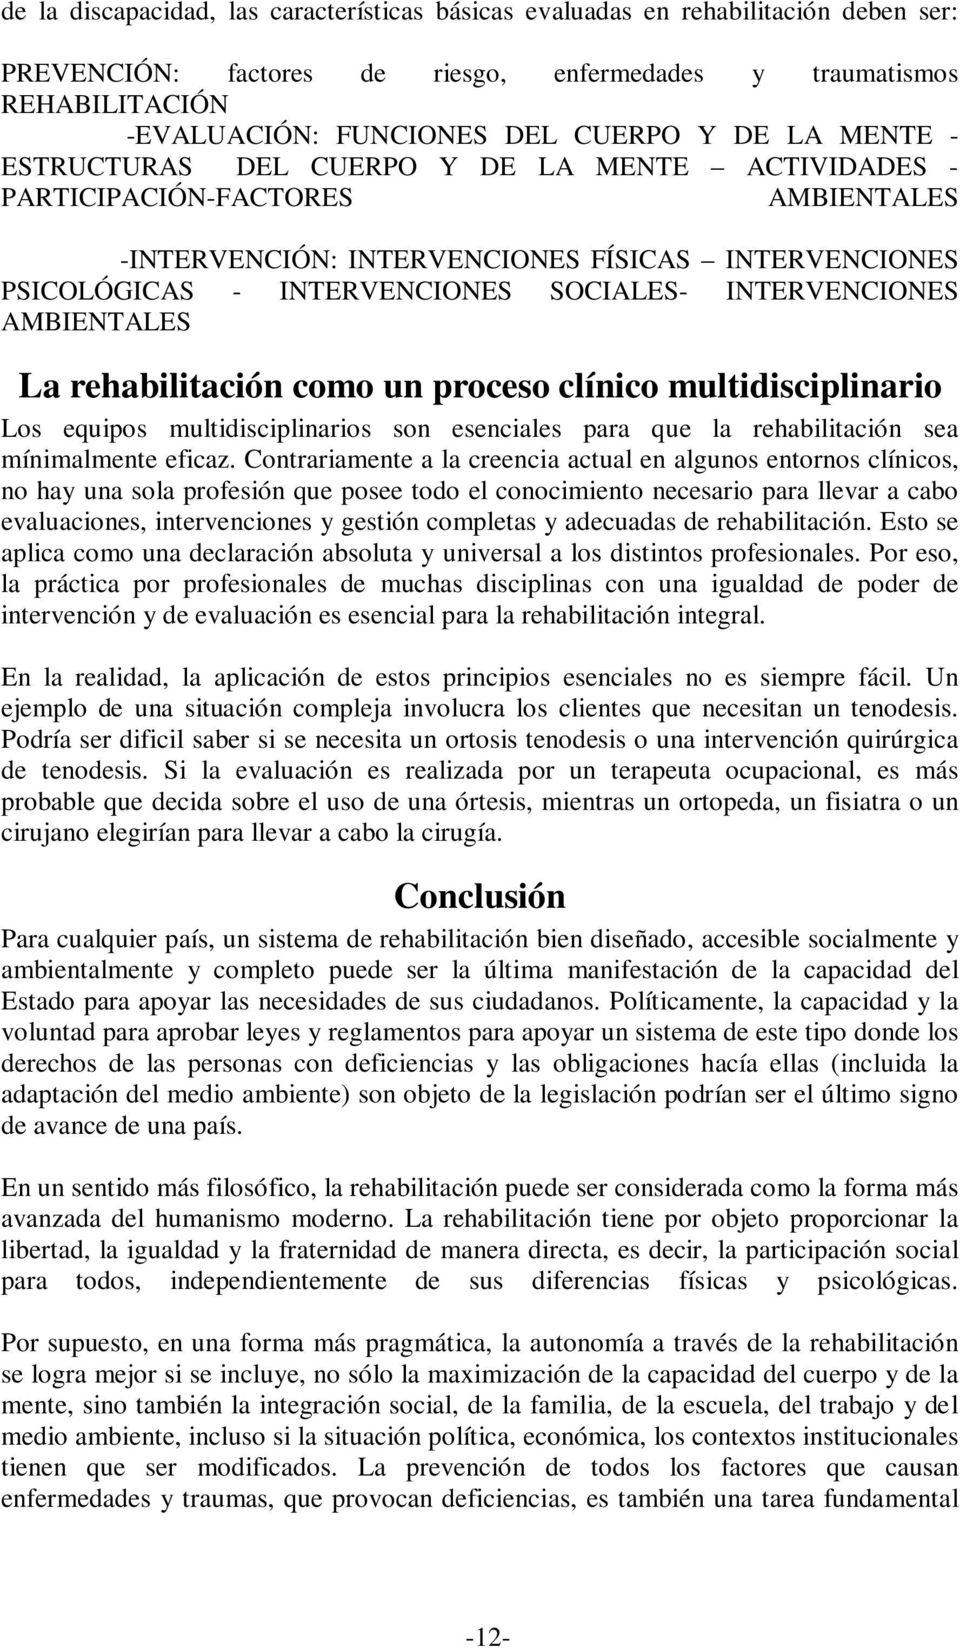 INTERVENCIONES AMBIENTALES La rehabilitación como un proceso clínico multidisciplinario Los equipos multidisciplinarios son esenciales para que la rehabilitación sea mínimalmente eficaz.